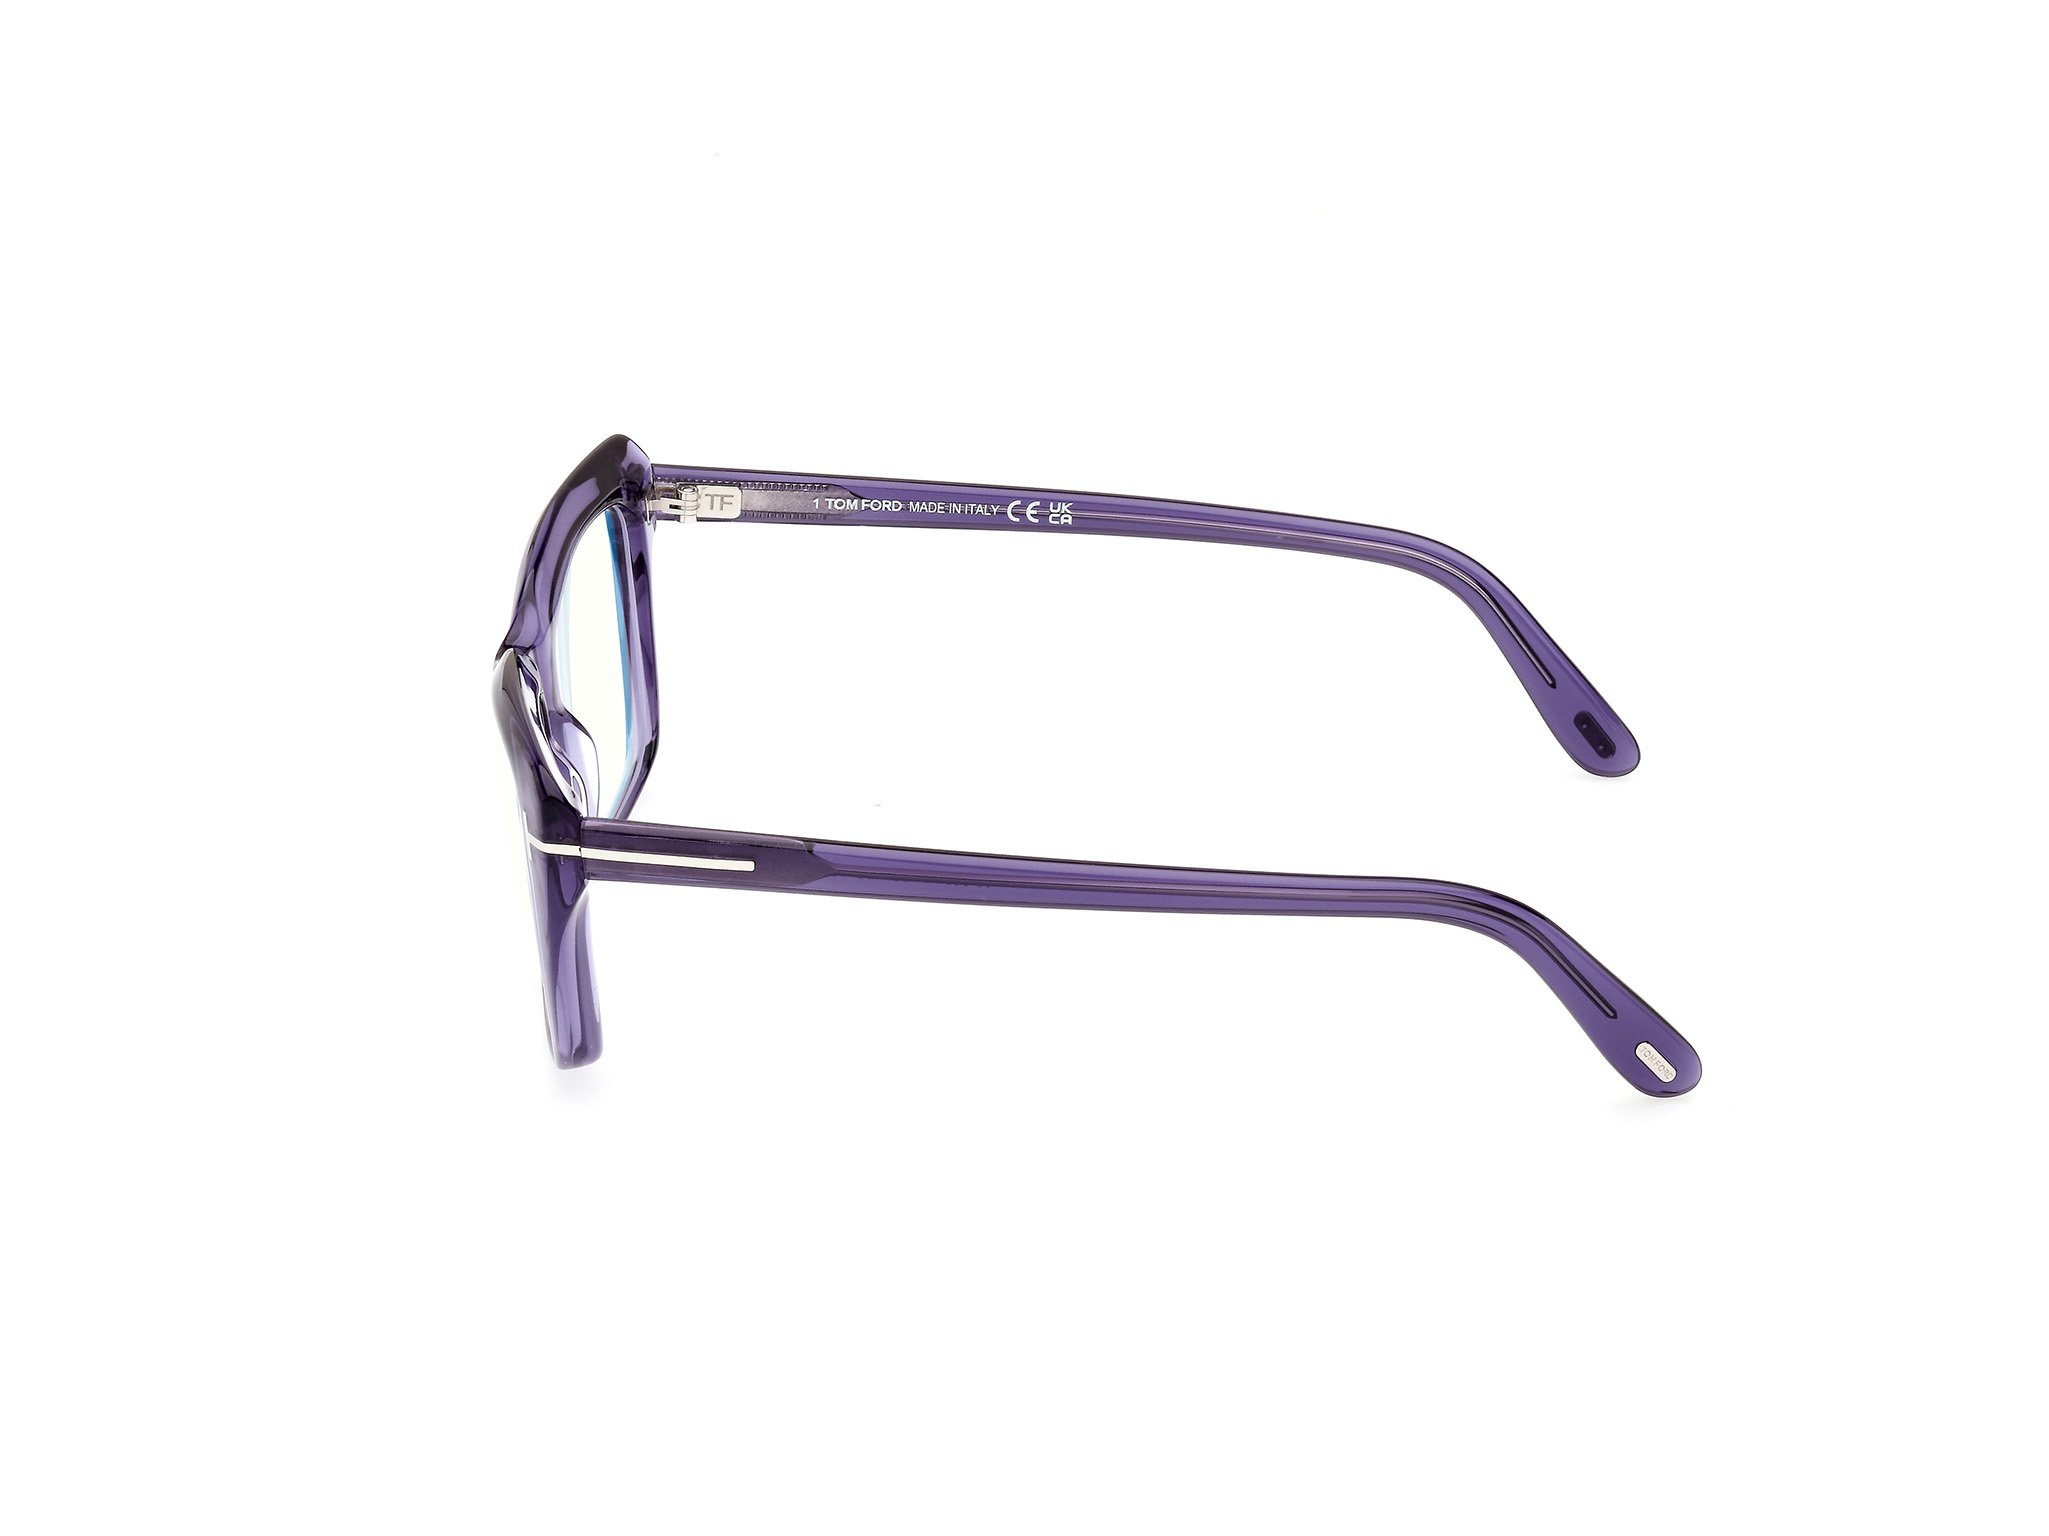 Das Bild zeigt die Korrektionsbrille FT5894-B 081 von der Marke Tom Ford in violett.